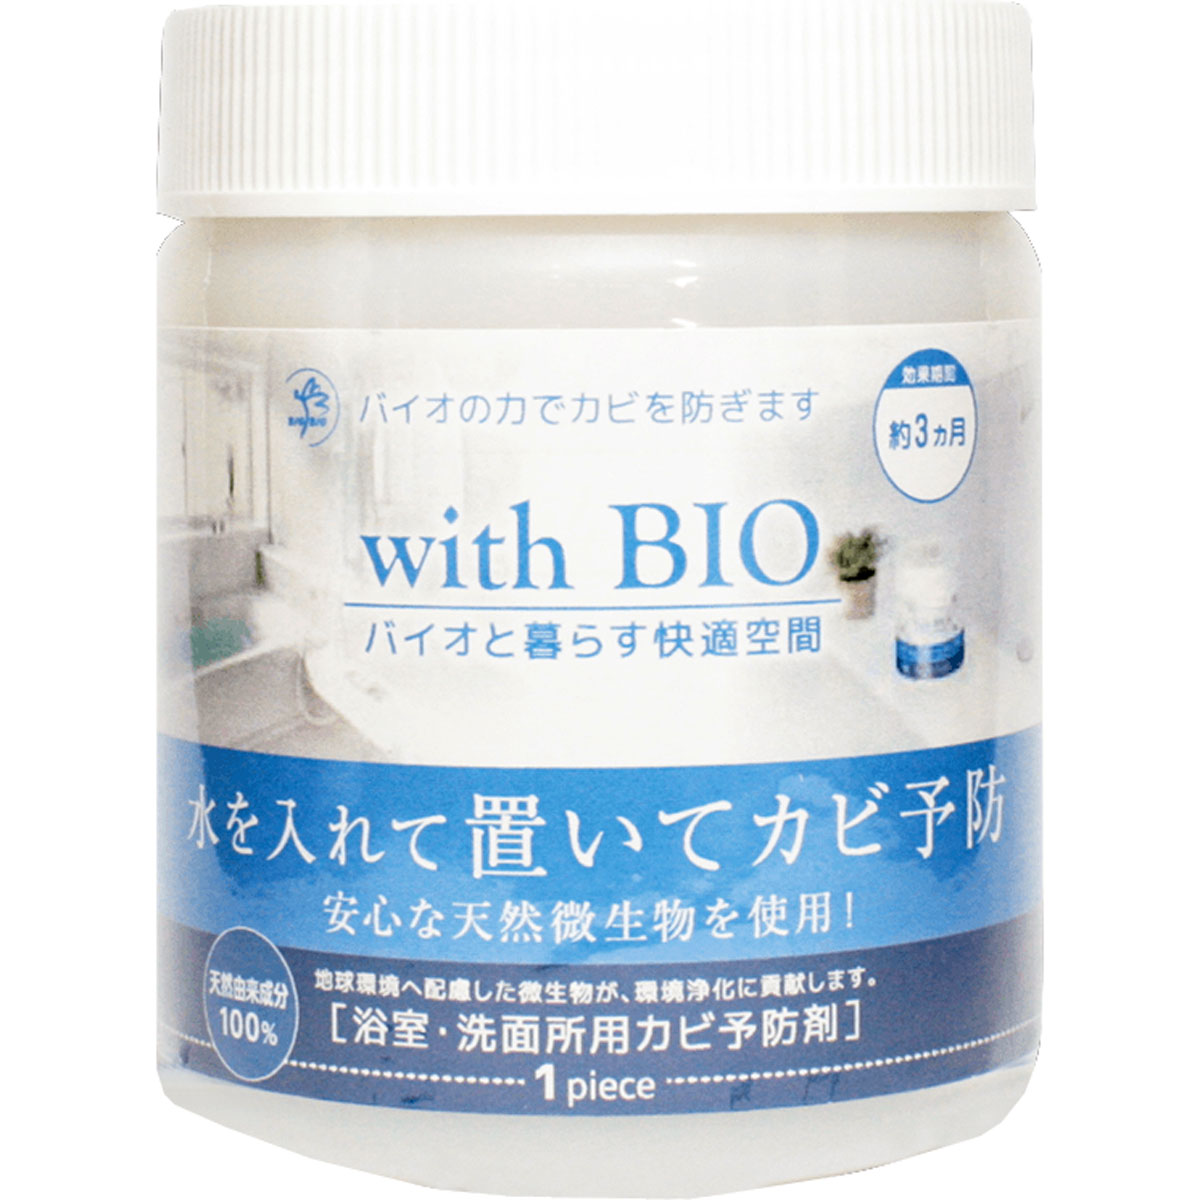 bigbio Bigbio with Bio 浴室用防霉劑 1個